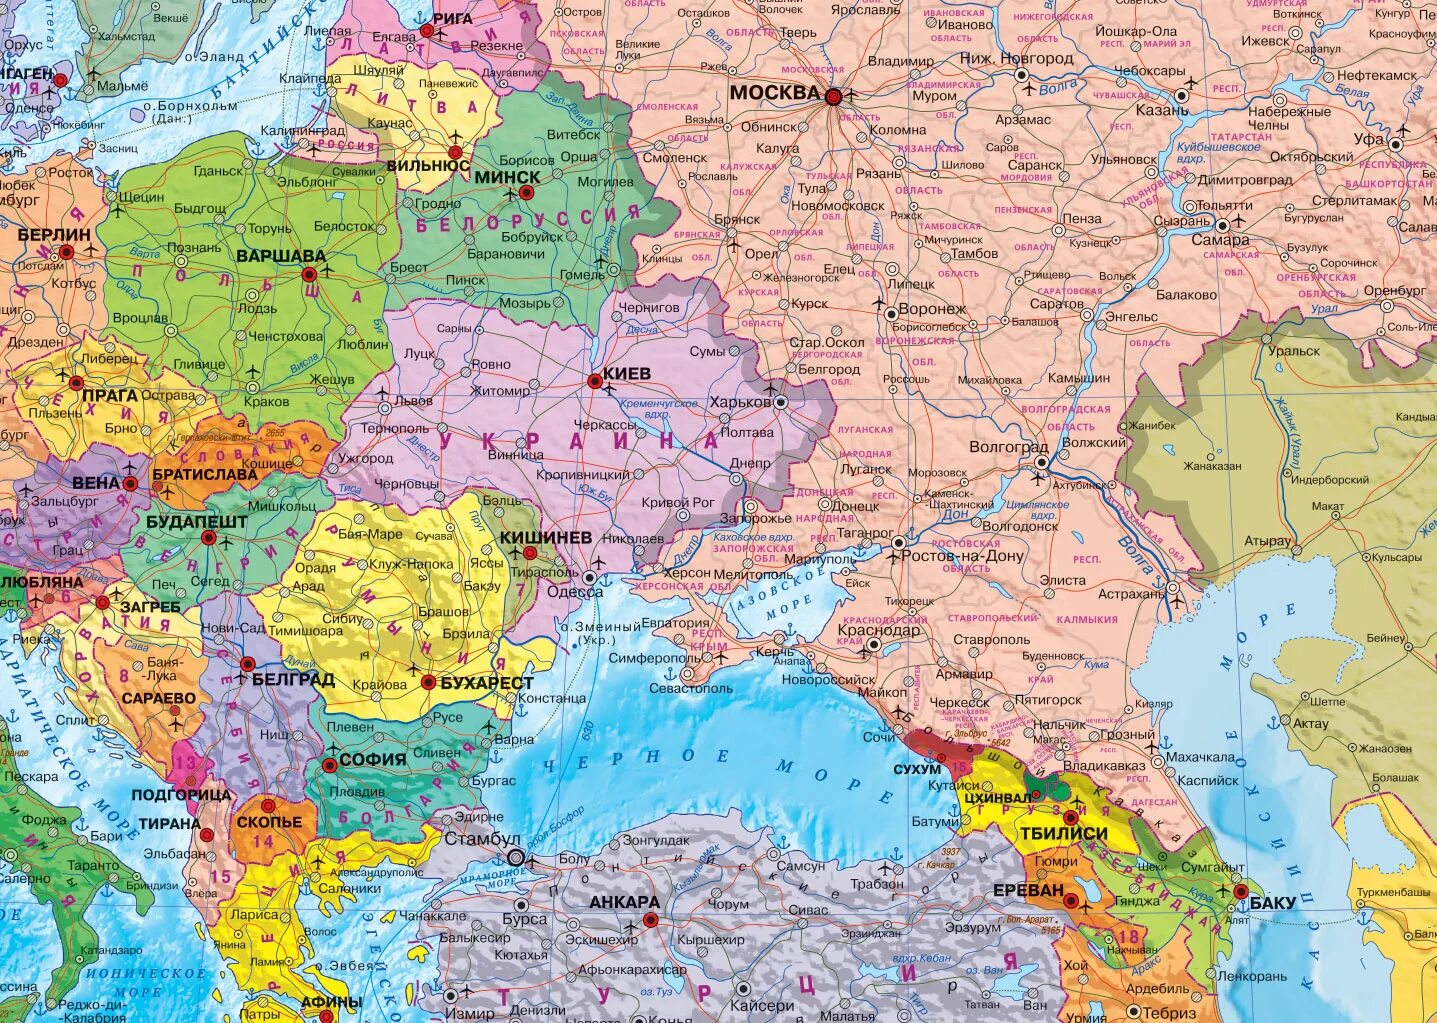 Карта евразии политическая крупная хорошее качество